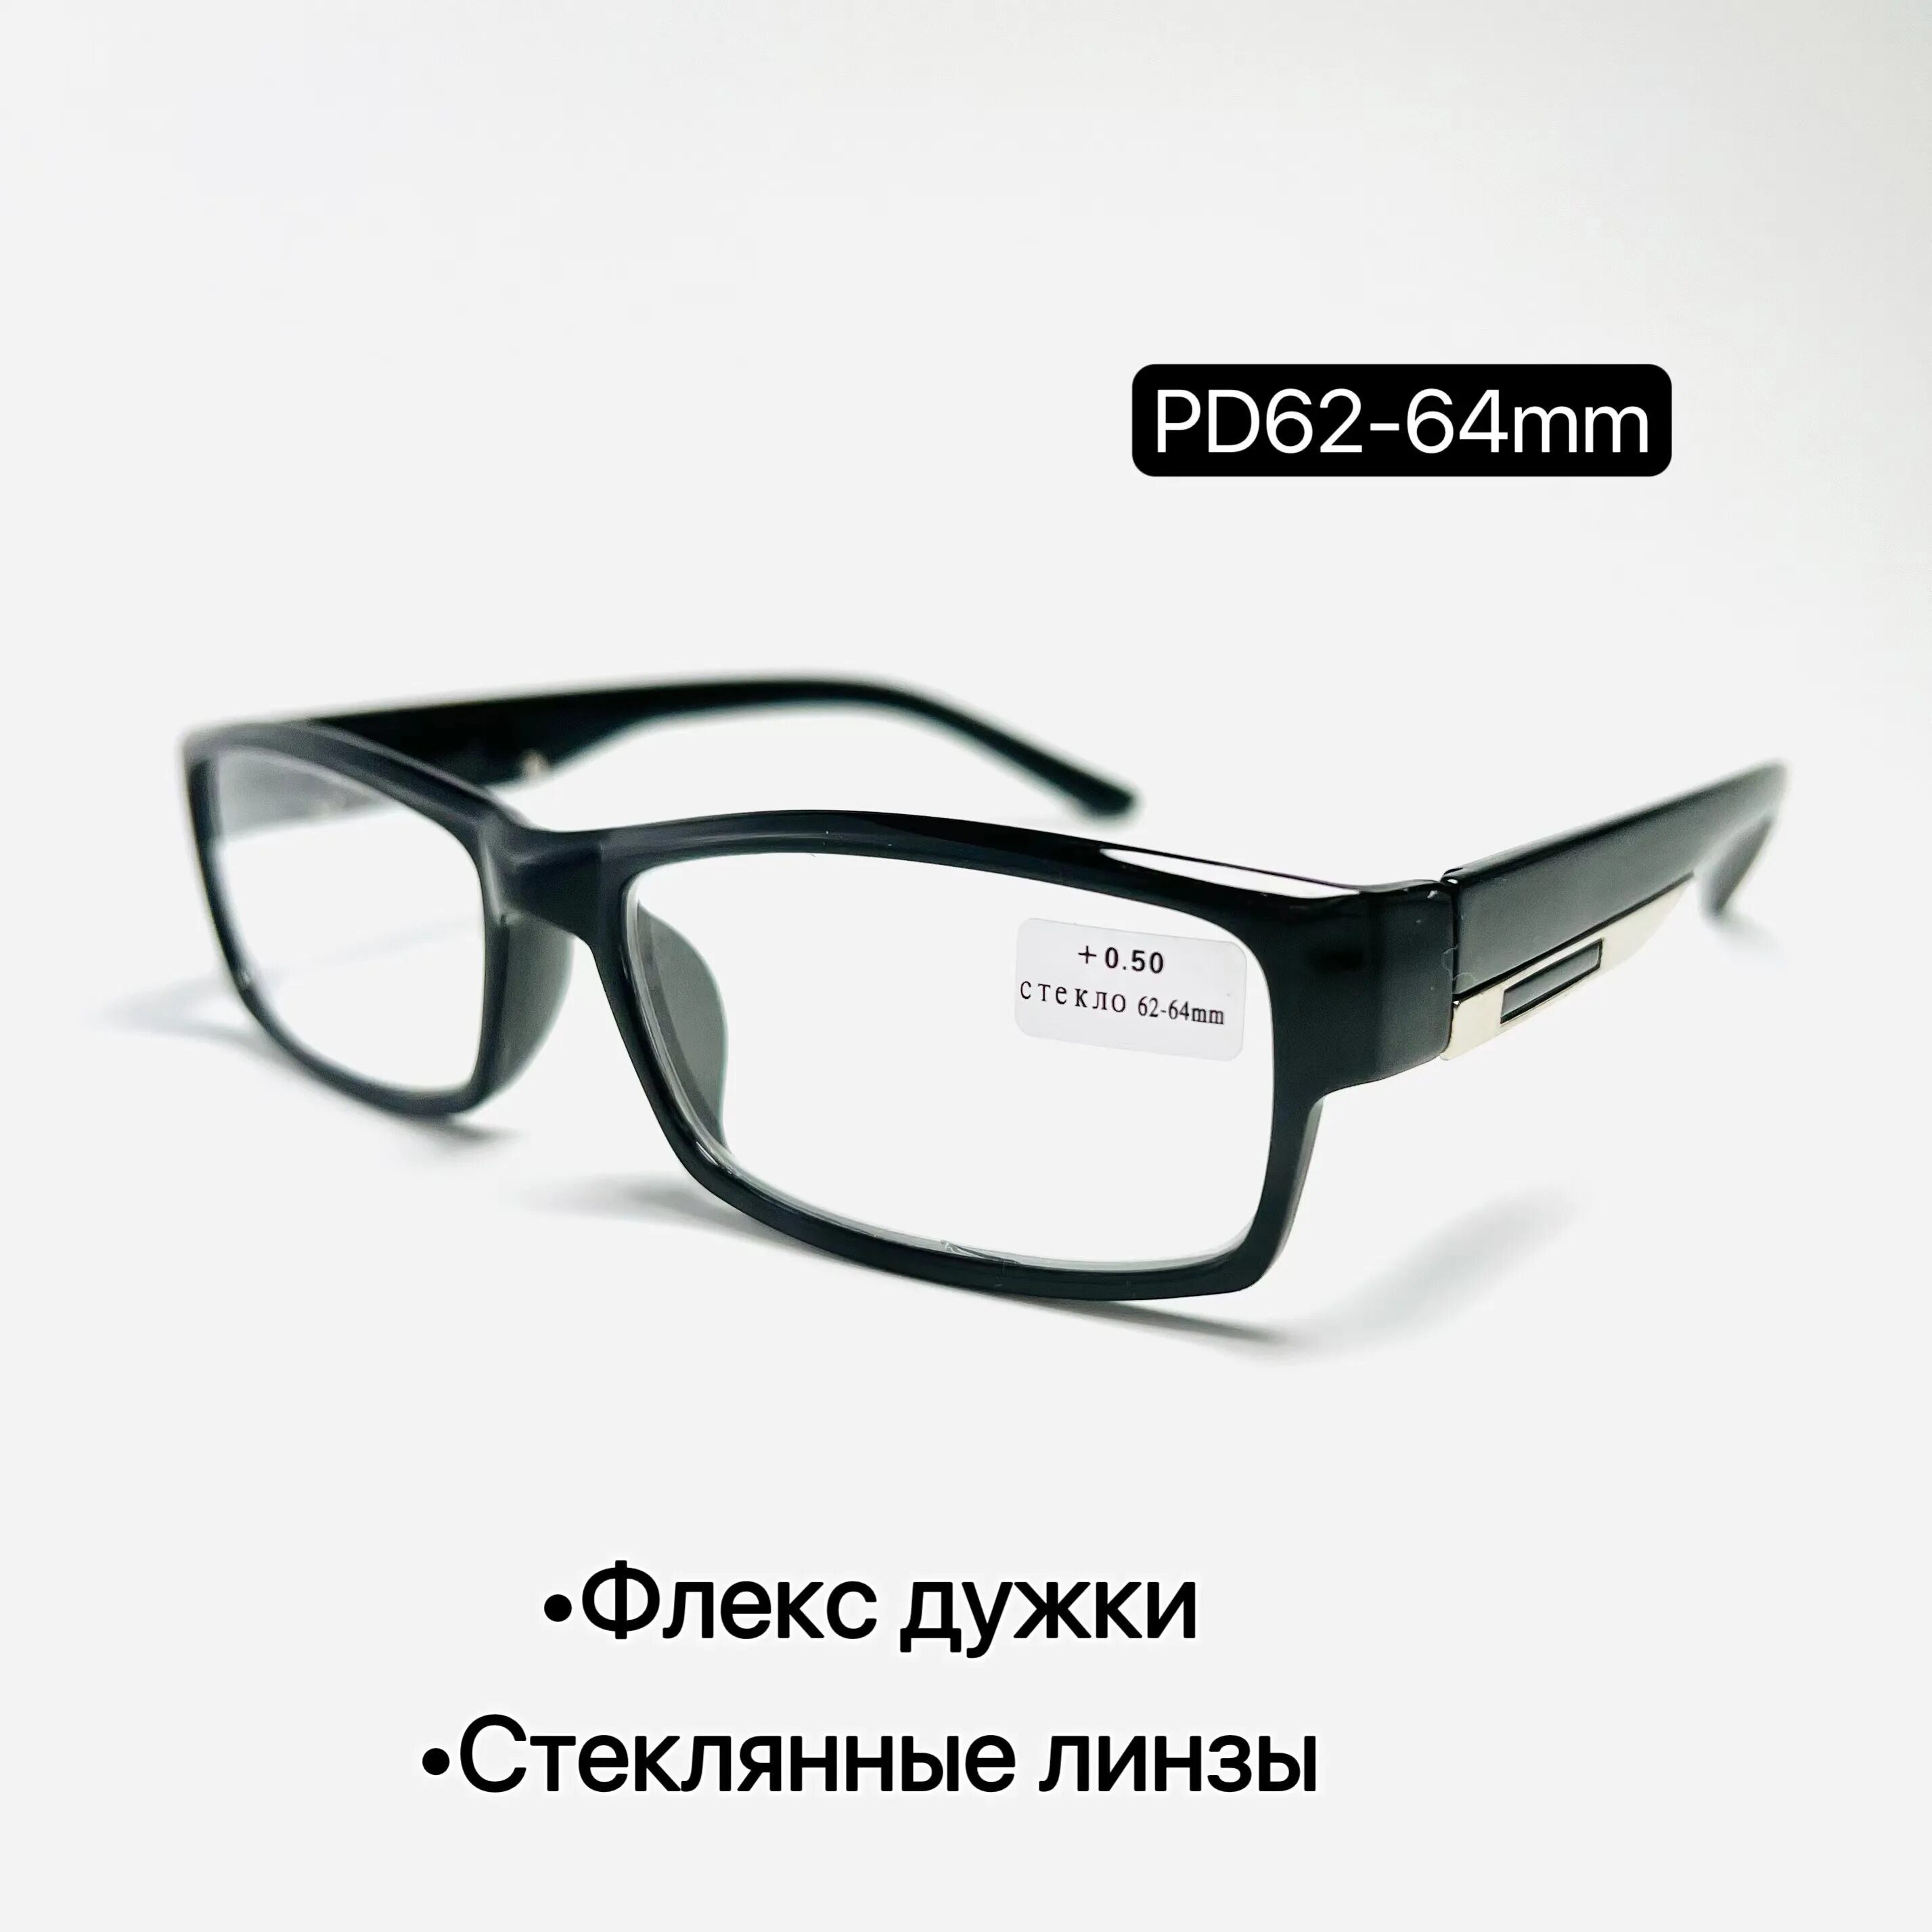 Флекс дужками. Очки PD 62-64 это. Дужки Флекс. Белые очки для флекса. Очки Флекс дужками для компьютера.